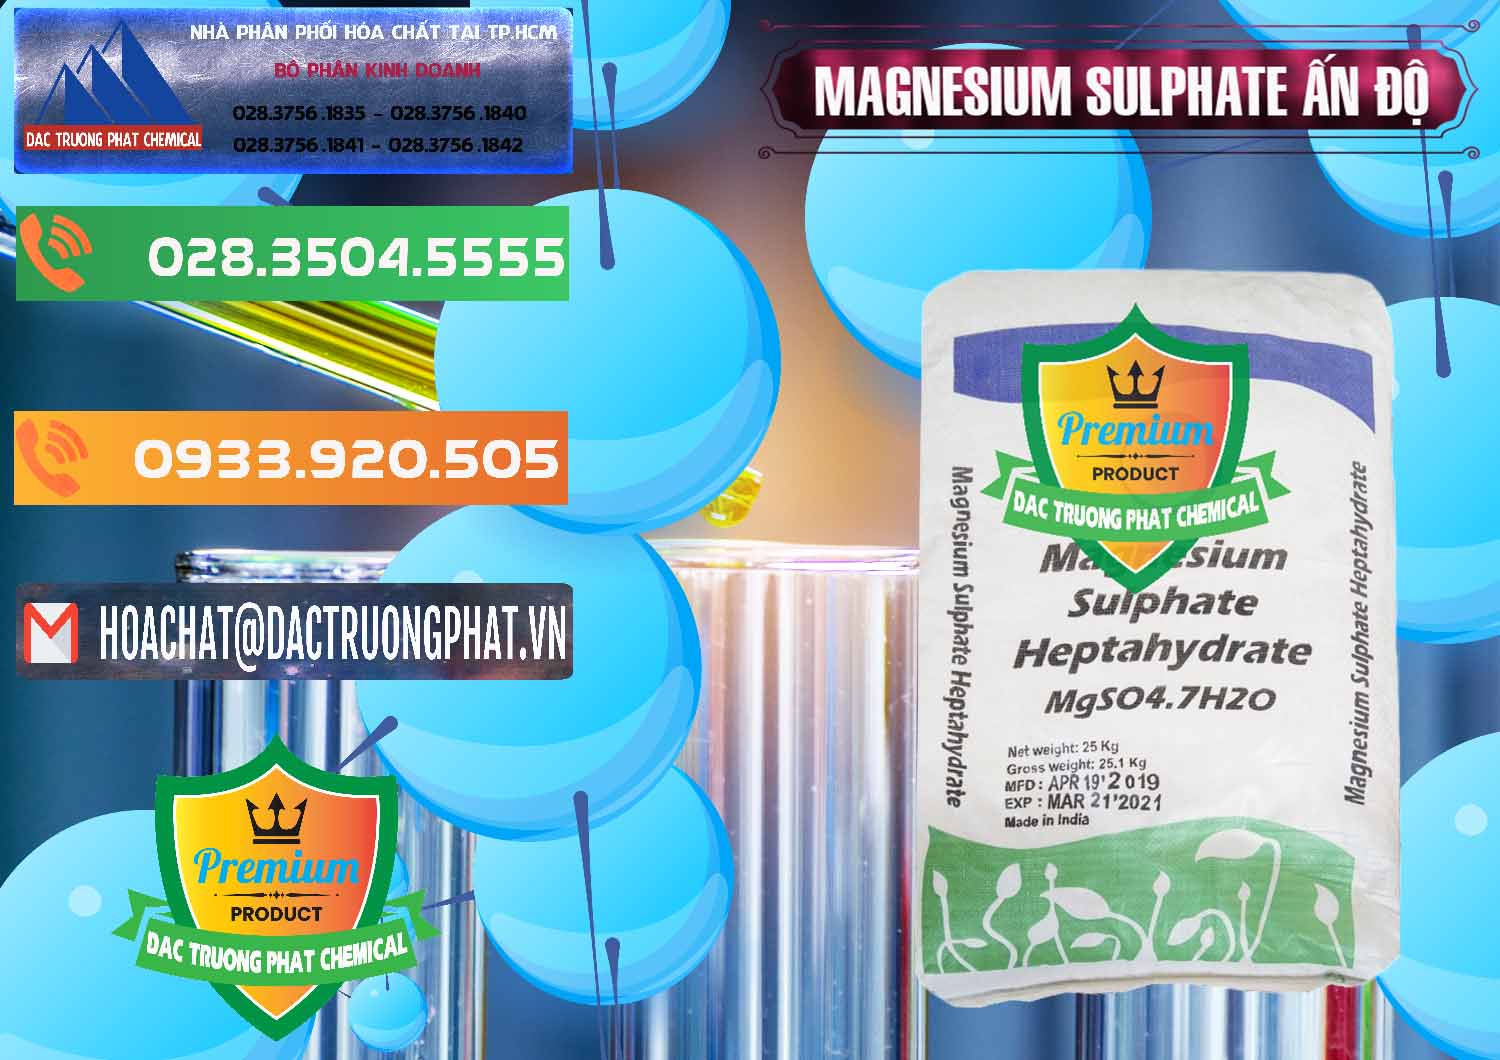 Chuyên kinh doanh & bán MGSO4.7H2O – Magnesium Sulphate Heptahydrate Ấn Độ India - 0362 - Công ty chuyên nhập khẩu & cung cấp hóa chất tại TP.HCM - hoachatxulynuoc.com.vn